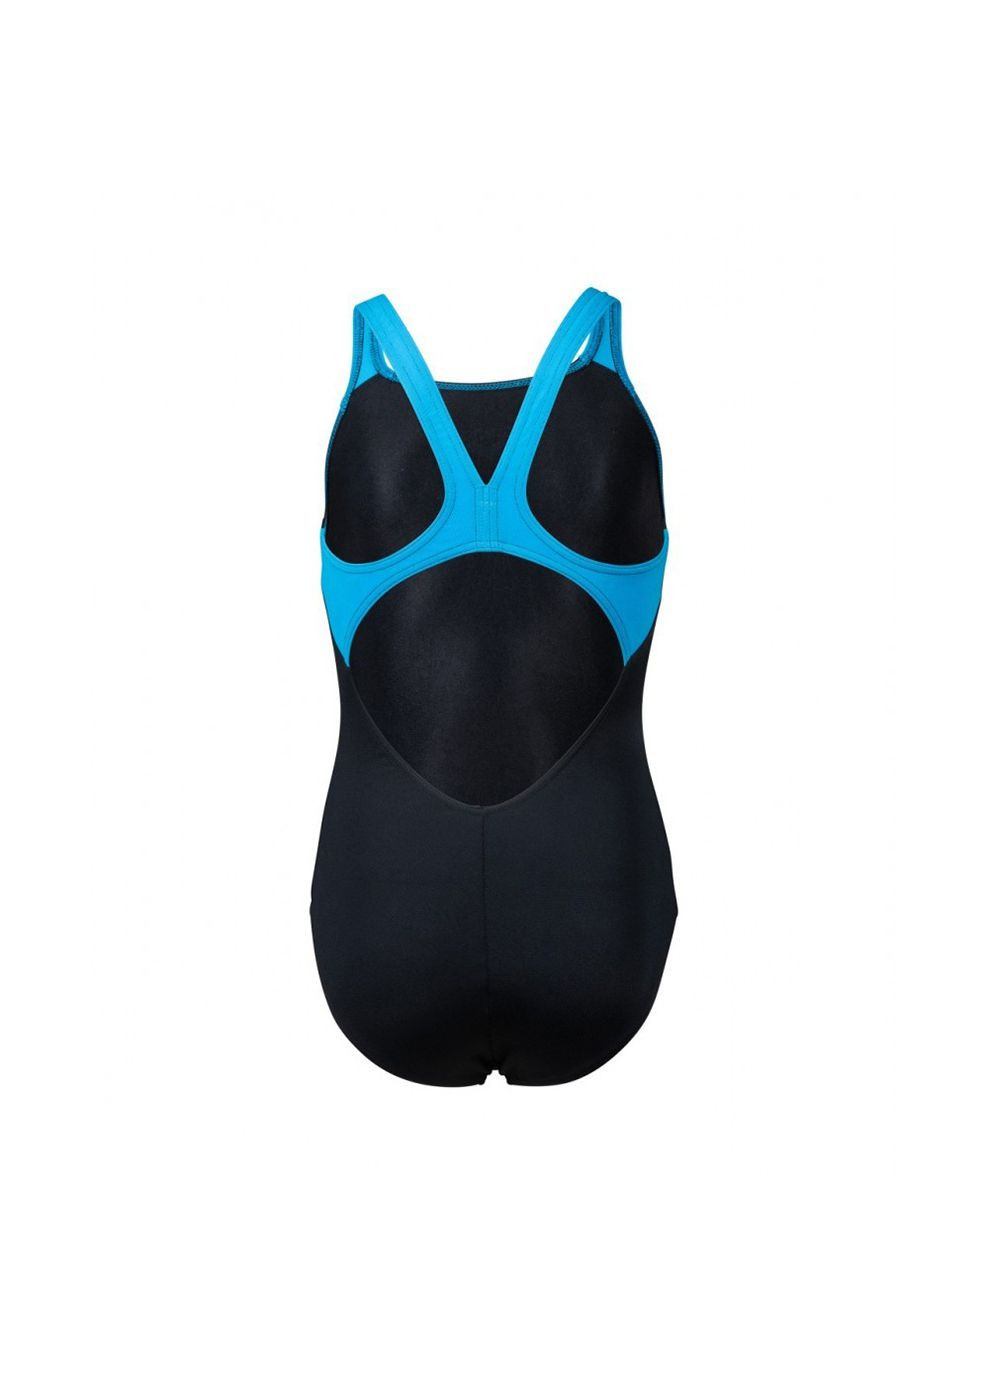 Комбінований демісезонний купальник закритий для дівчат butterfly swimsuit v back чорний, блакитний діт Arena